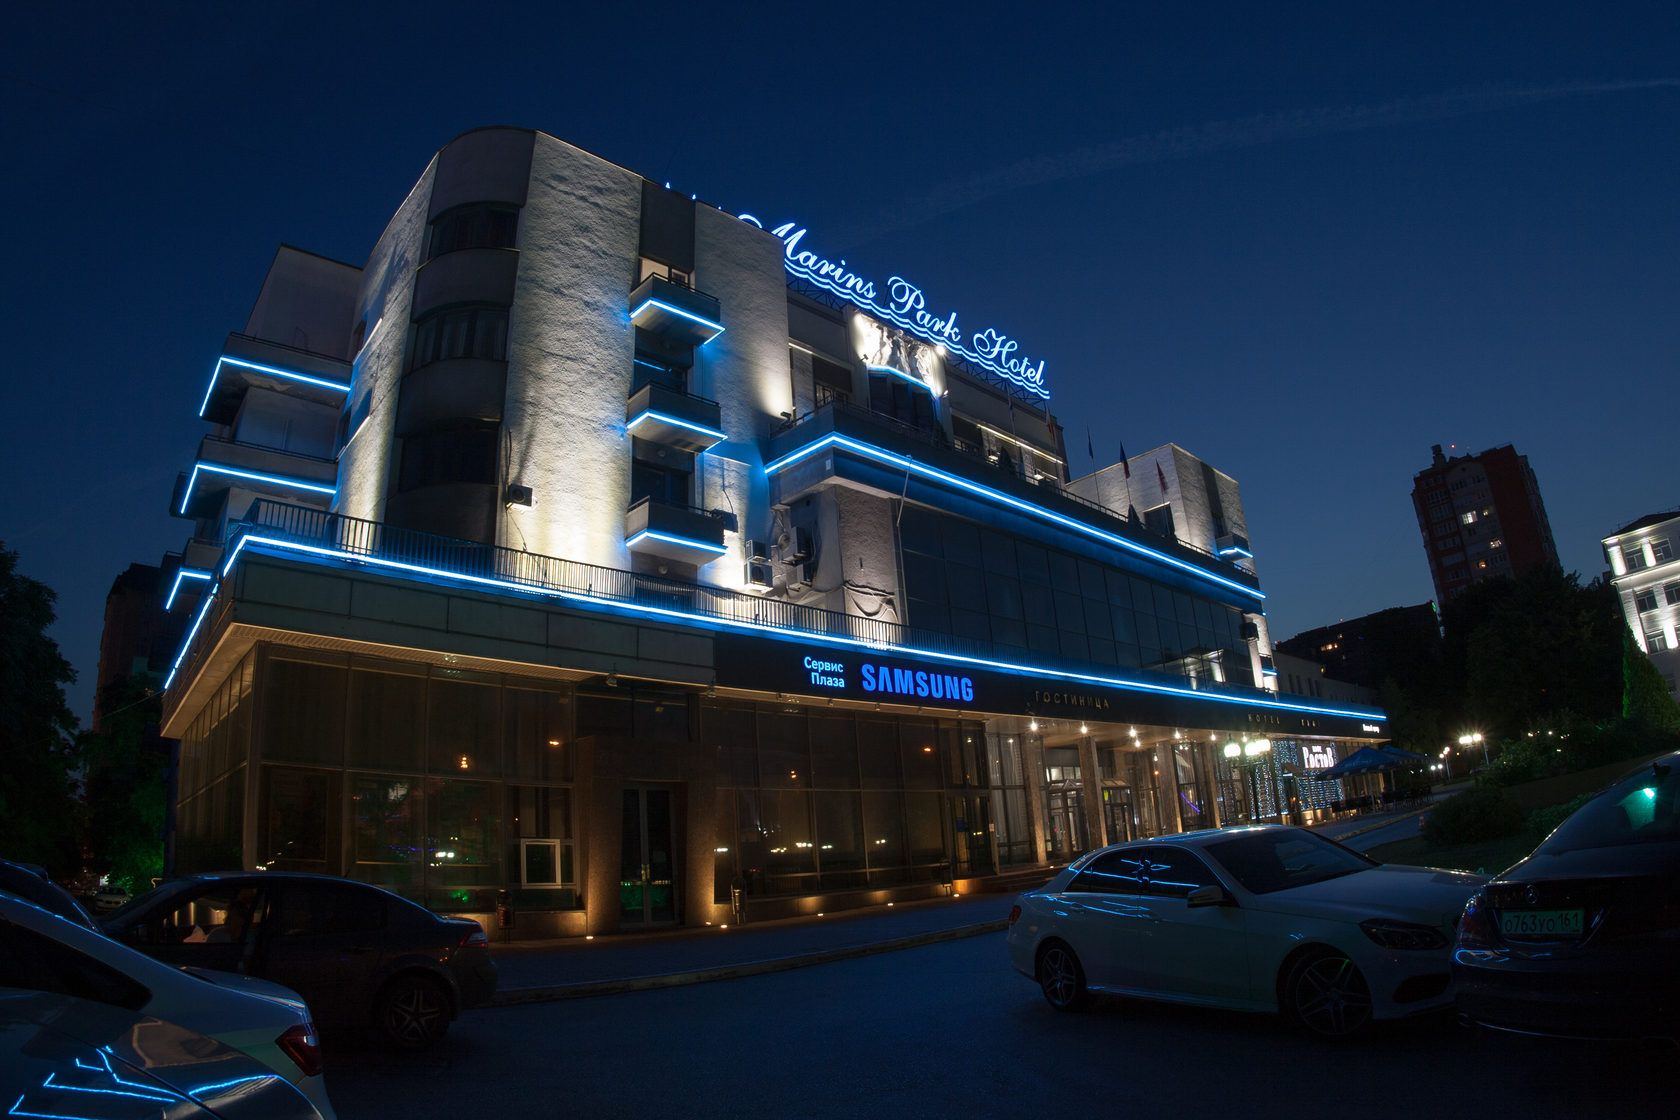 Фасадное освещение Marins Park Hotel - освещение культурно-развлекательного центра, Ростов-на-Дону, 2015